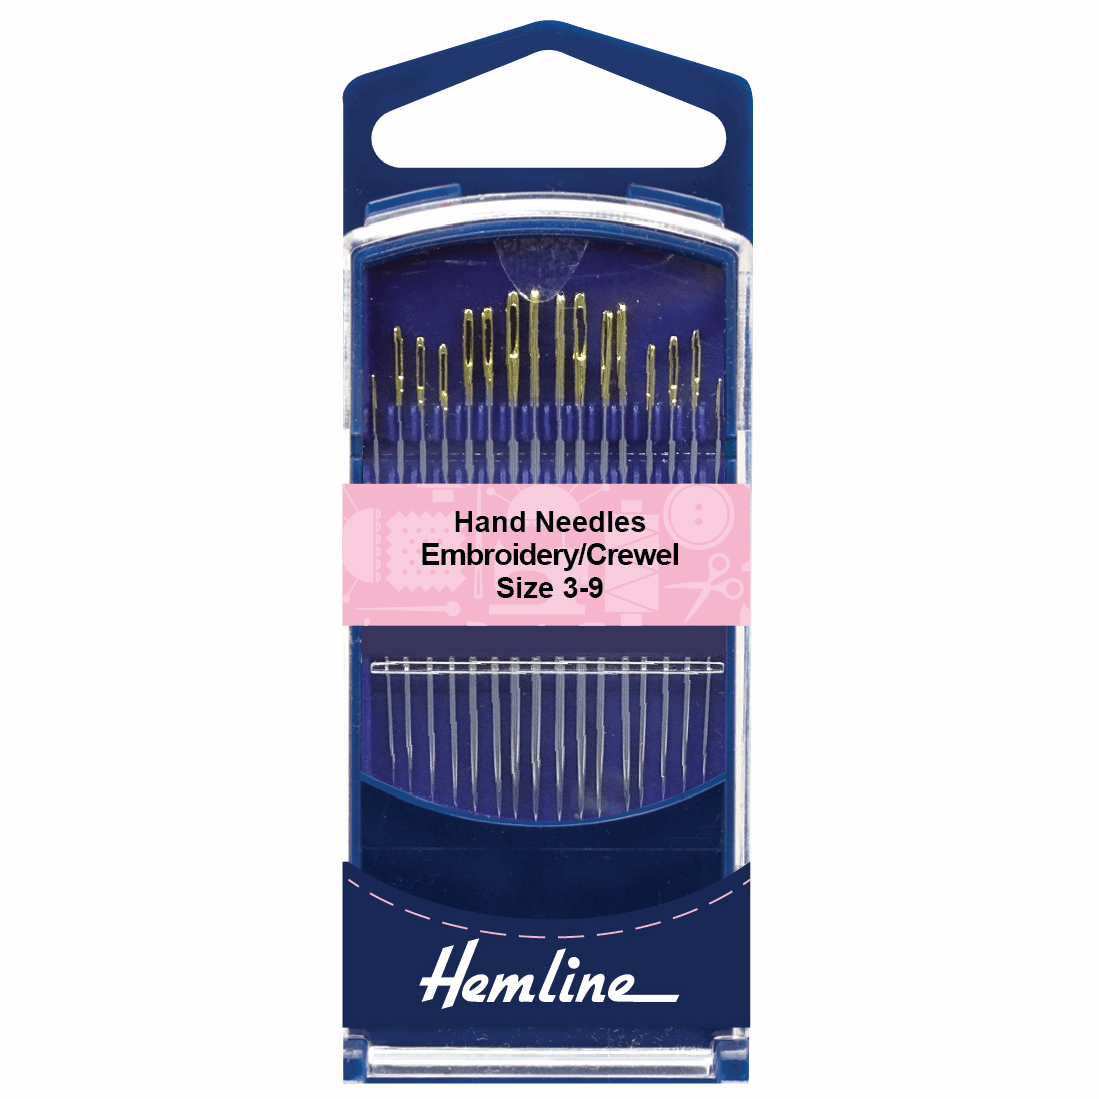 Embroidery / Crewel Needles - Size 3-9 (Hemline Premium)